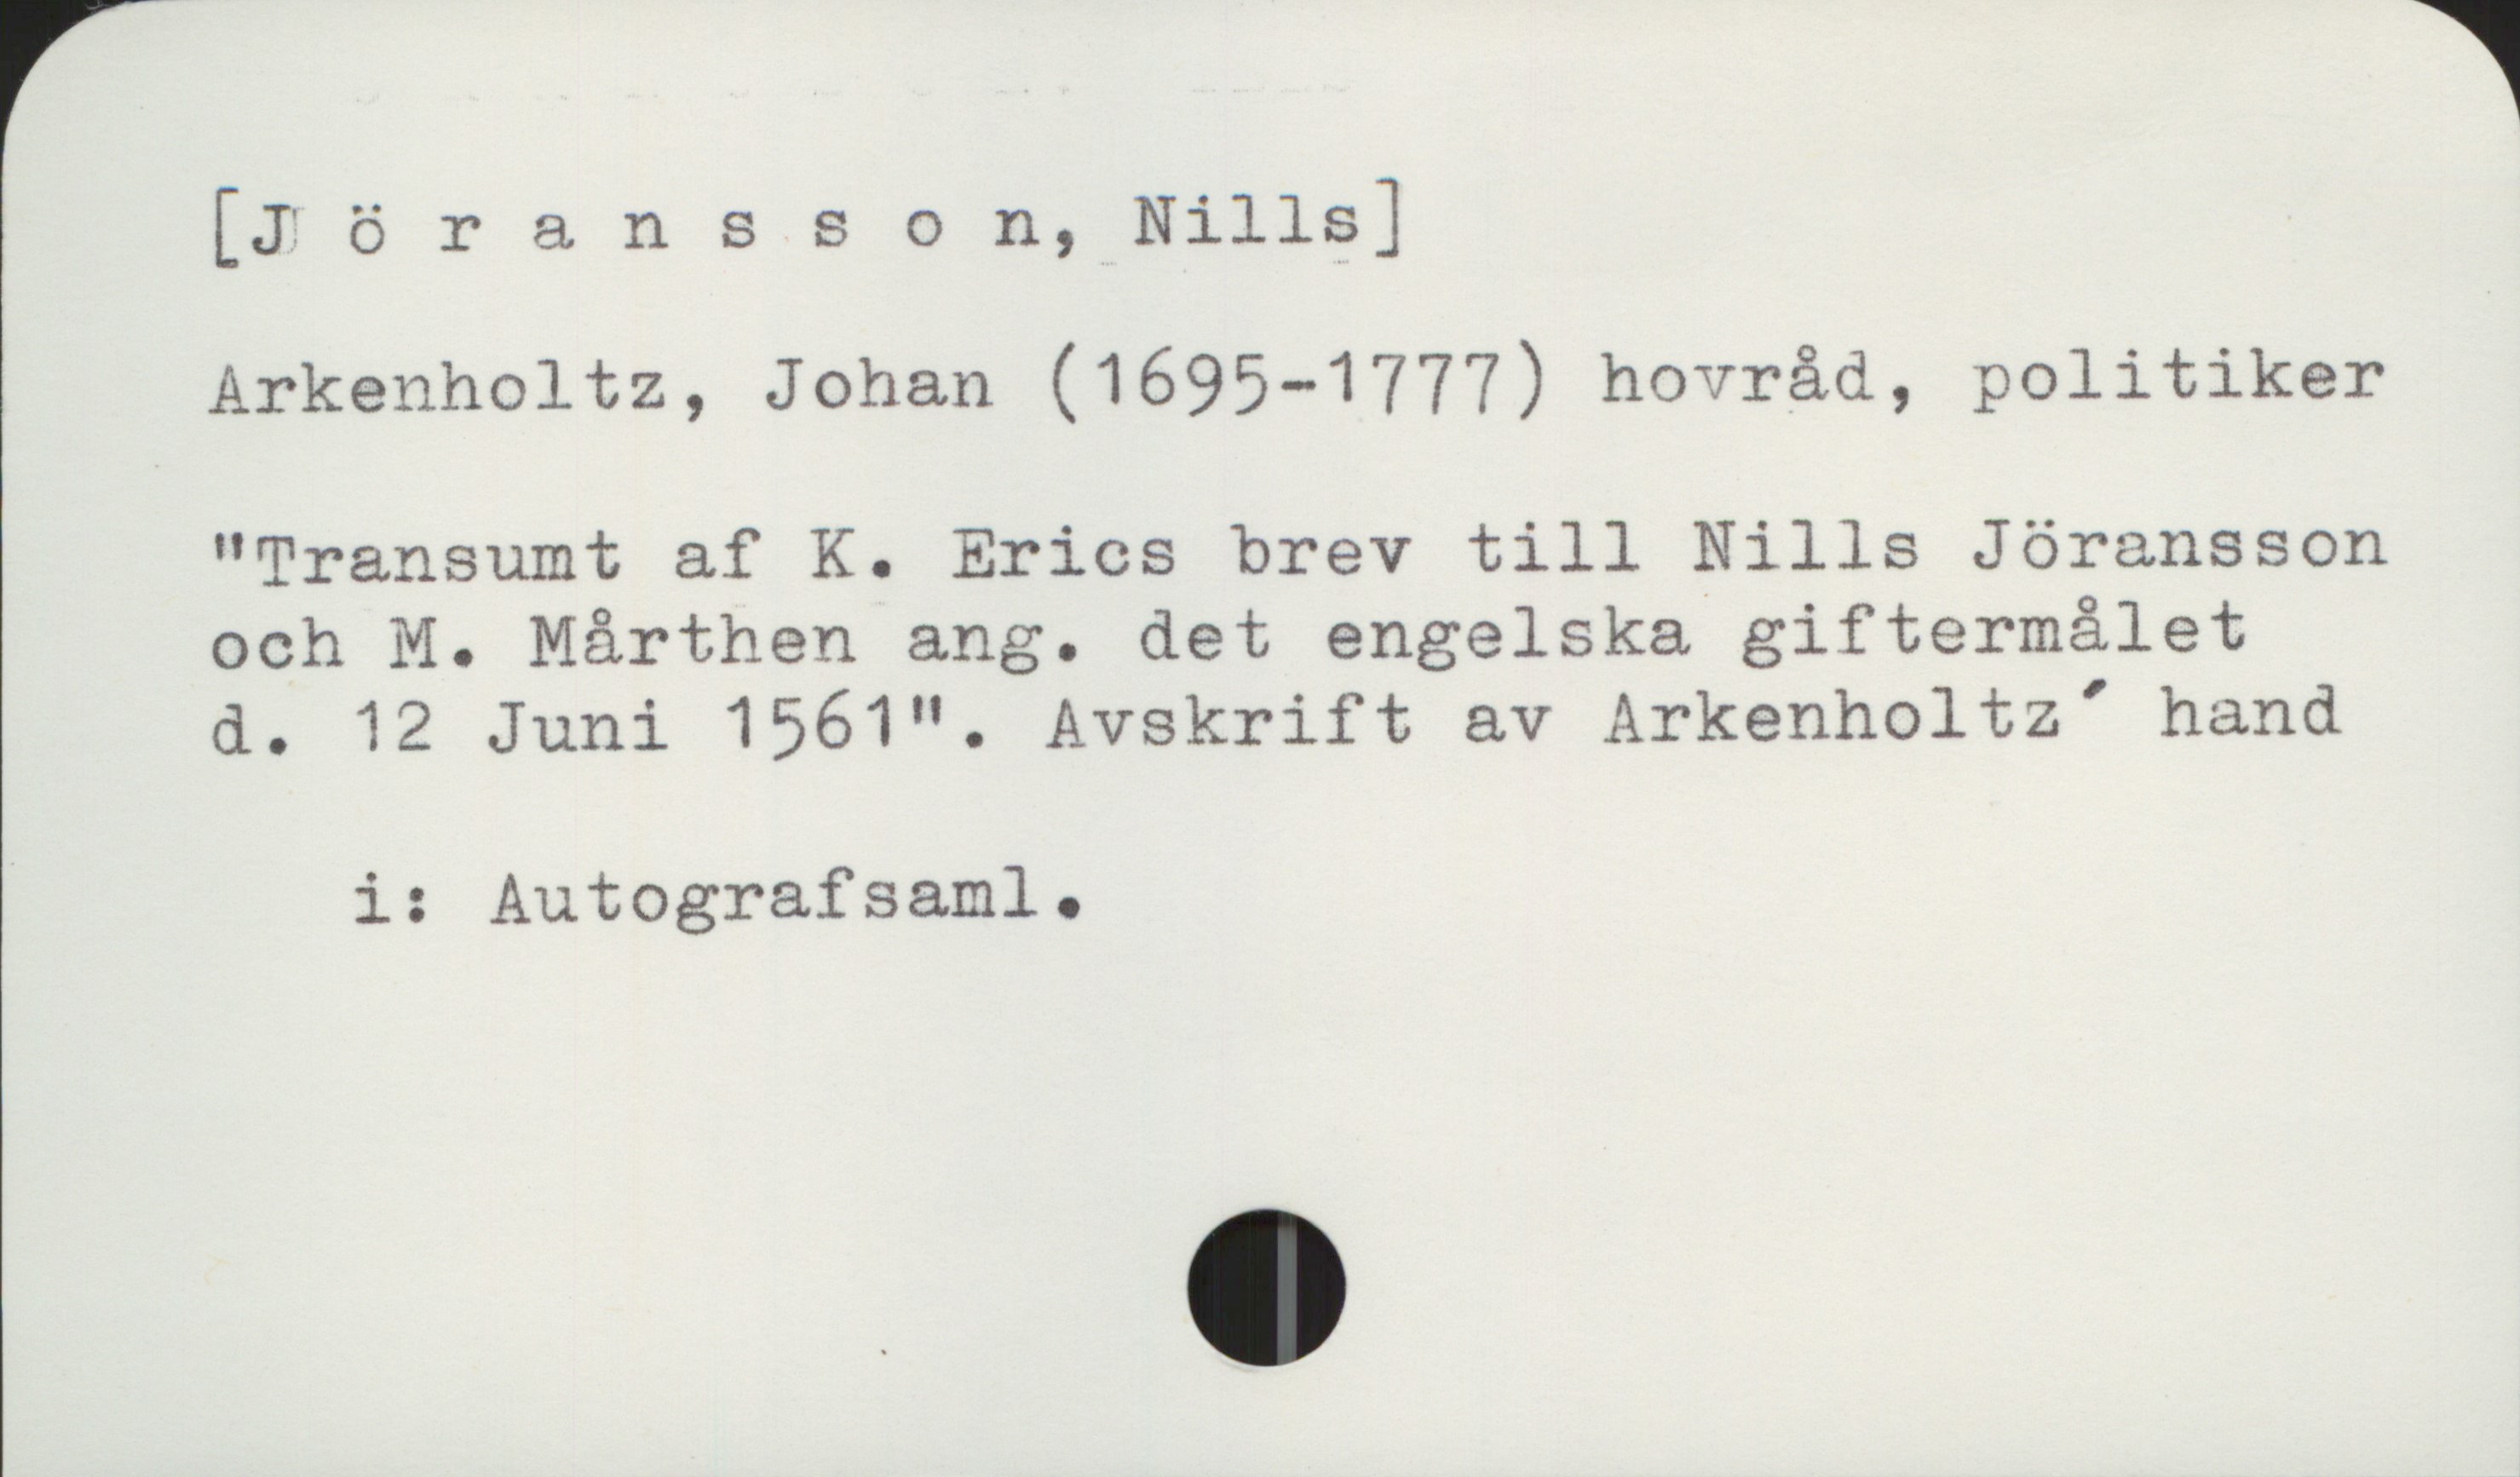  [Iöransson, Nills]

Arkenholtz, Johan (1695-1777) hovråd, politiker

"Transumt af K. Erics brev till Nills Jöransson

och M. Mårthen ang. det engelska giftermålet

d. 12 Juni 1561". Avskrift av Arkenholtz' hand
i: Autografsaml.

